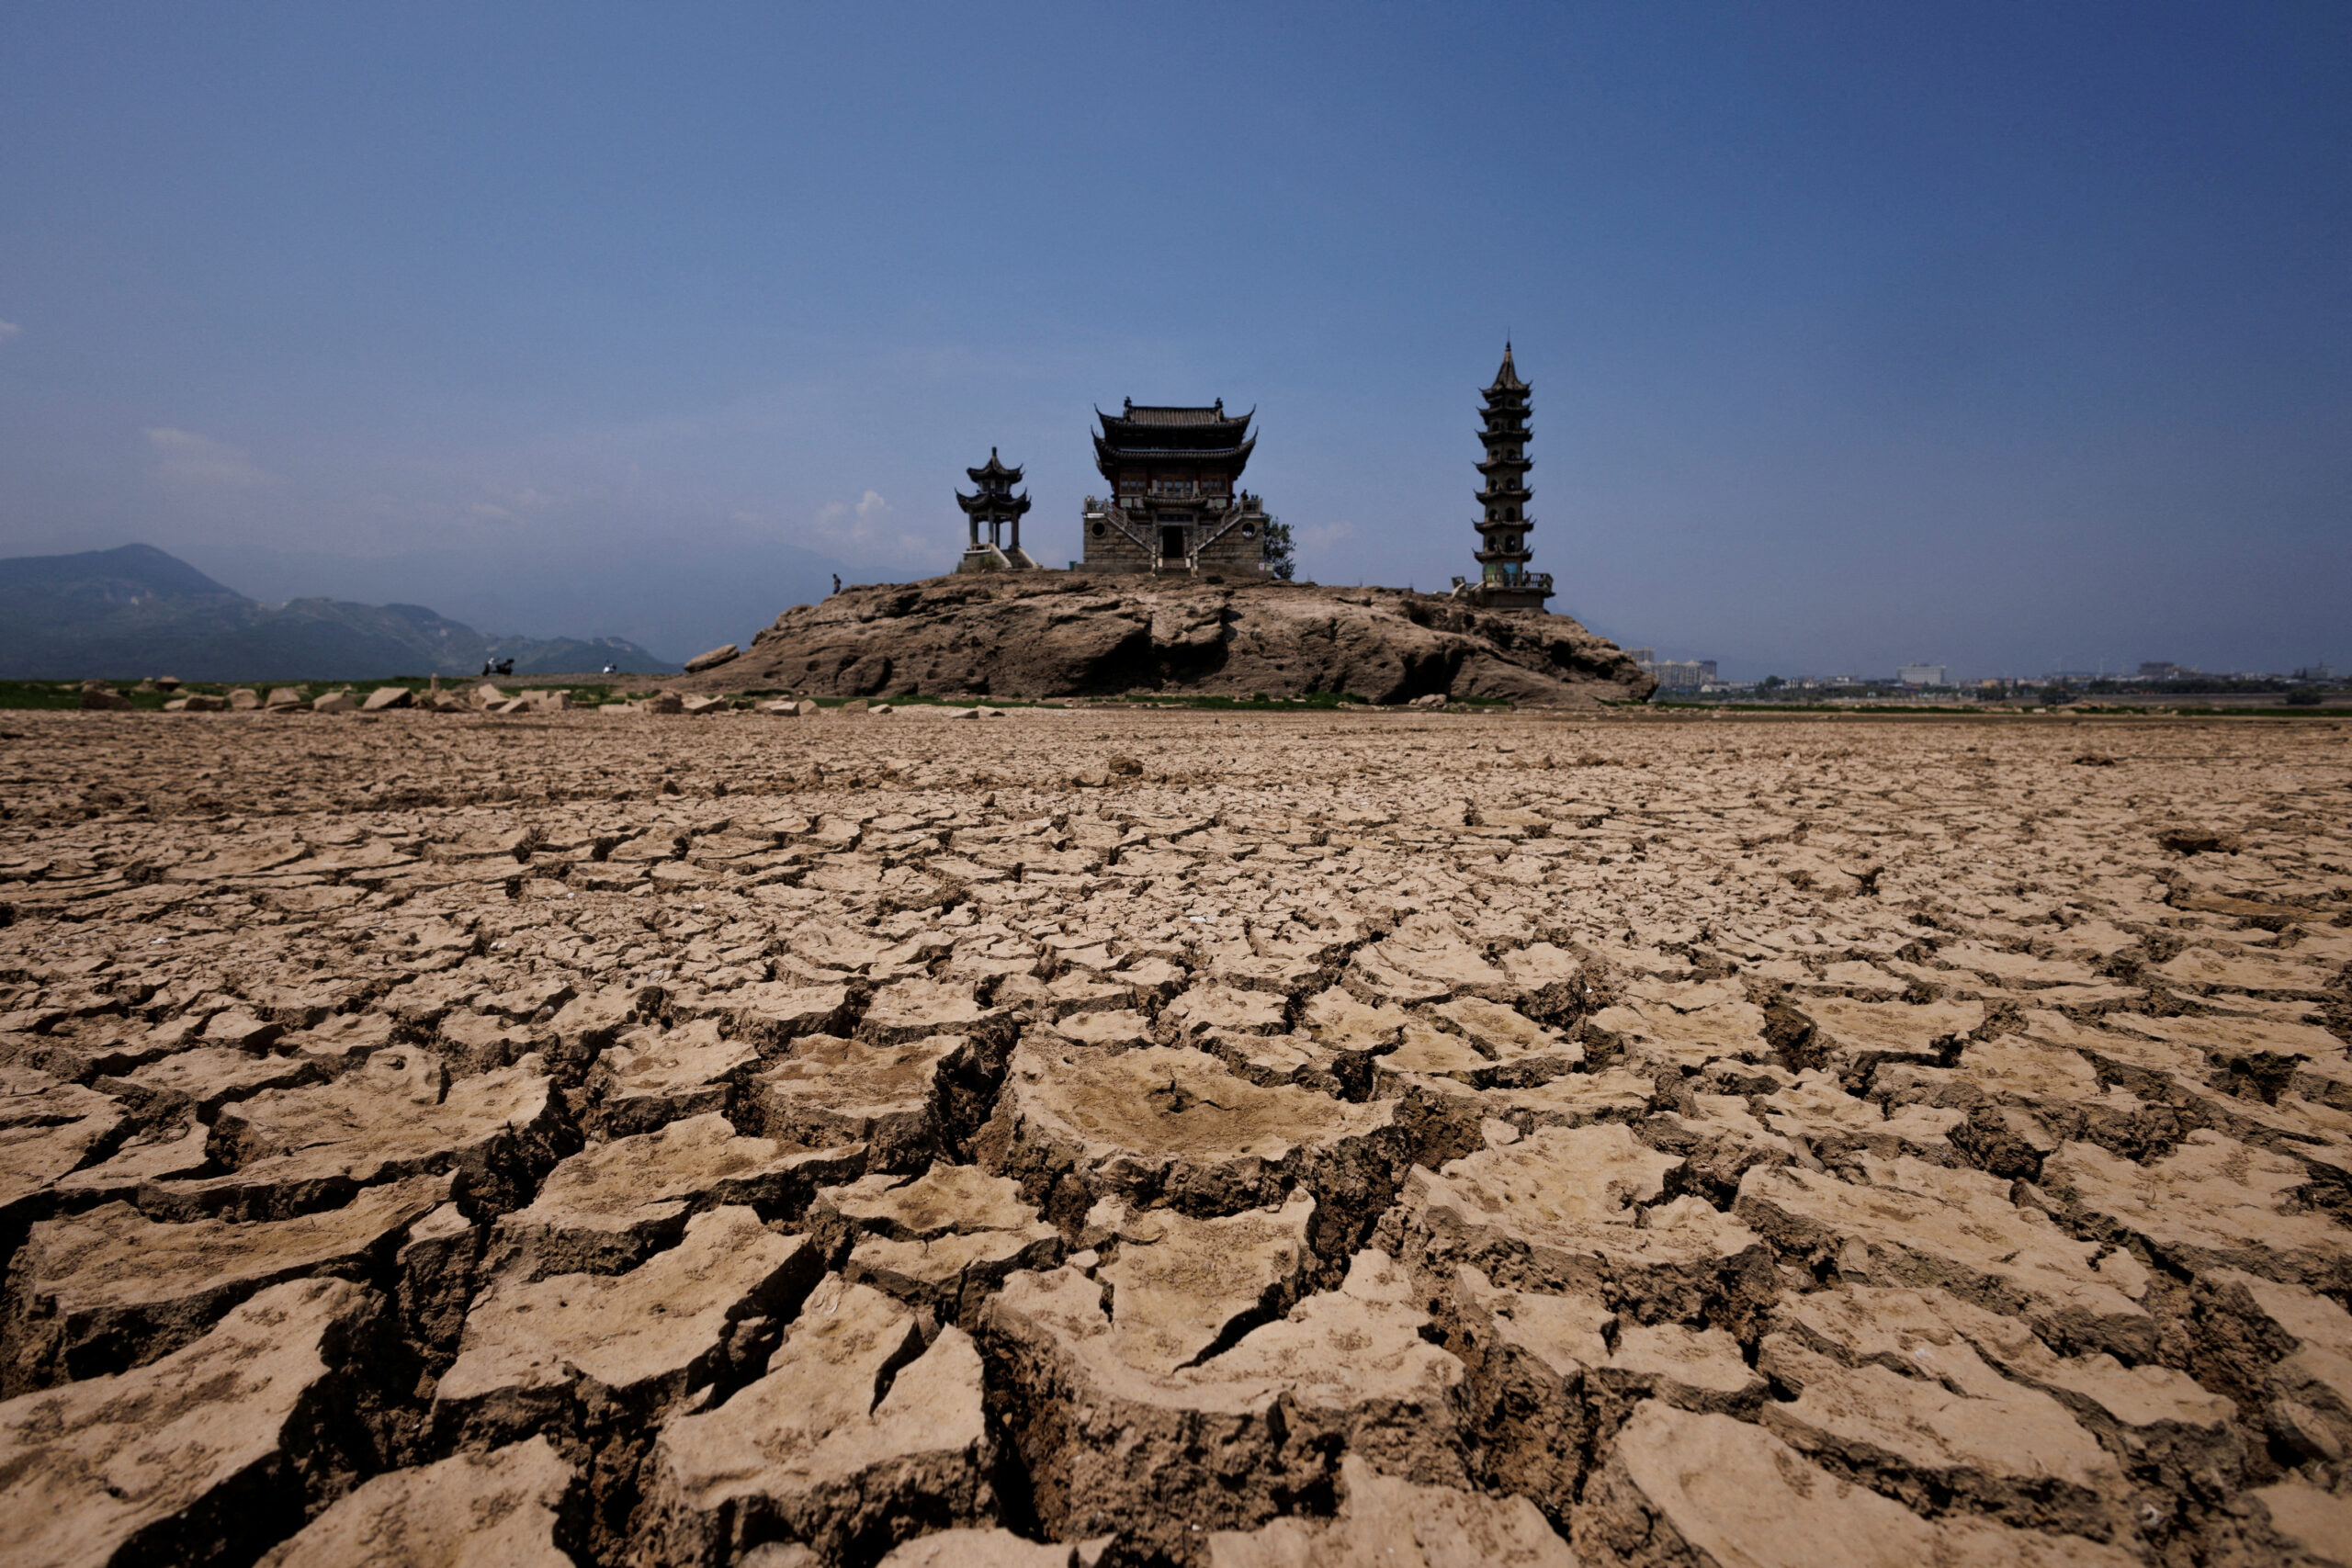 خشکسالی به وسعت چین، اروپا و آمریکا